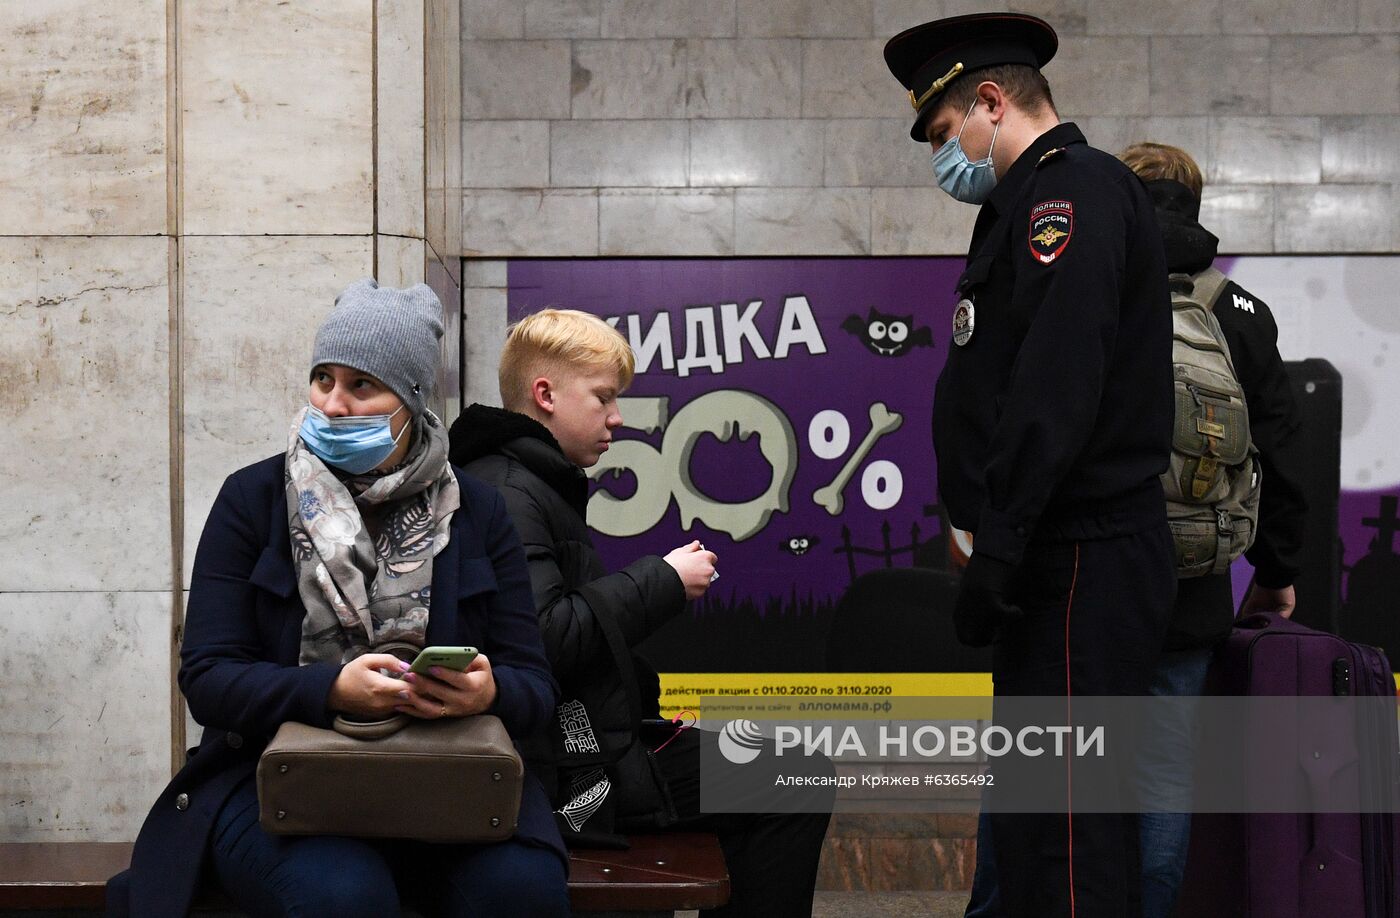 Рейд по контролю за соблюдением масочного режима в метрополитене Новосибирска